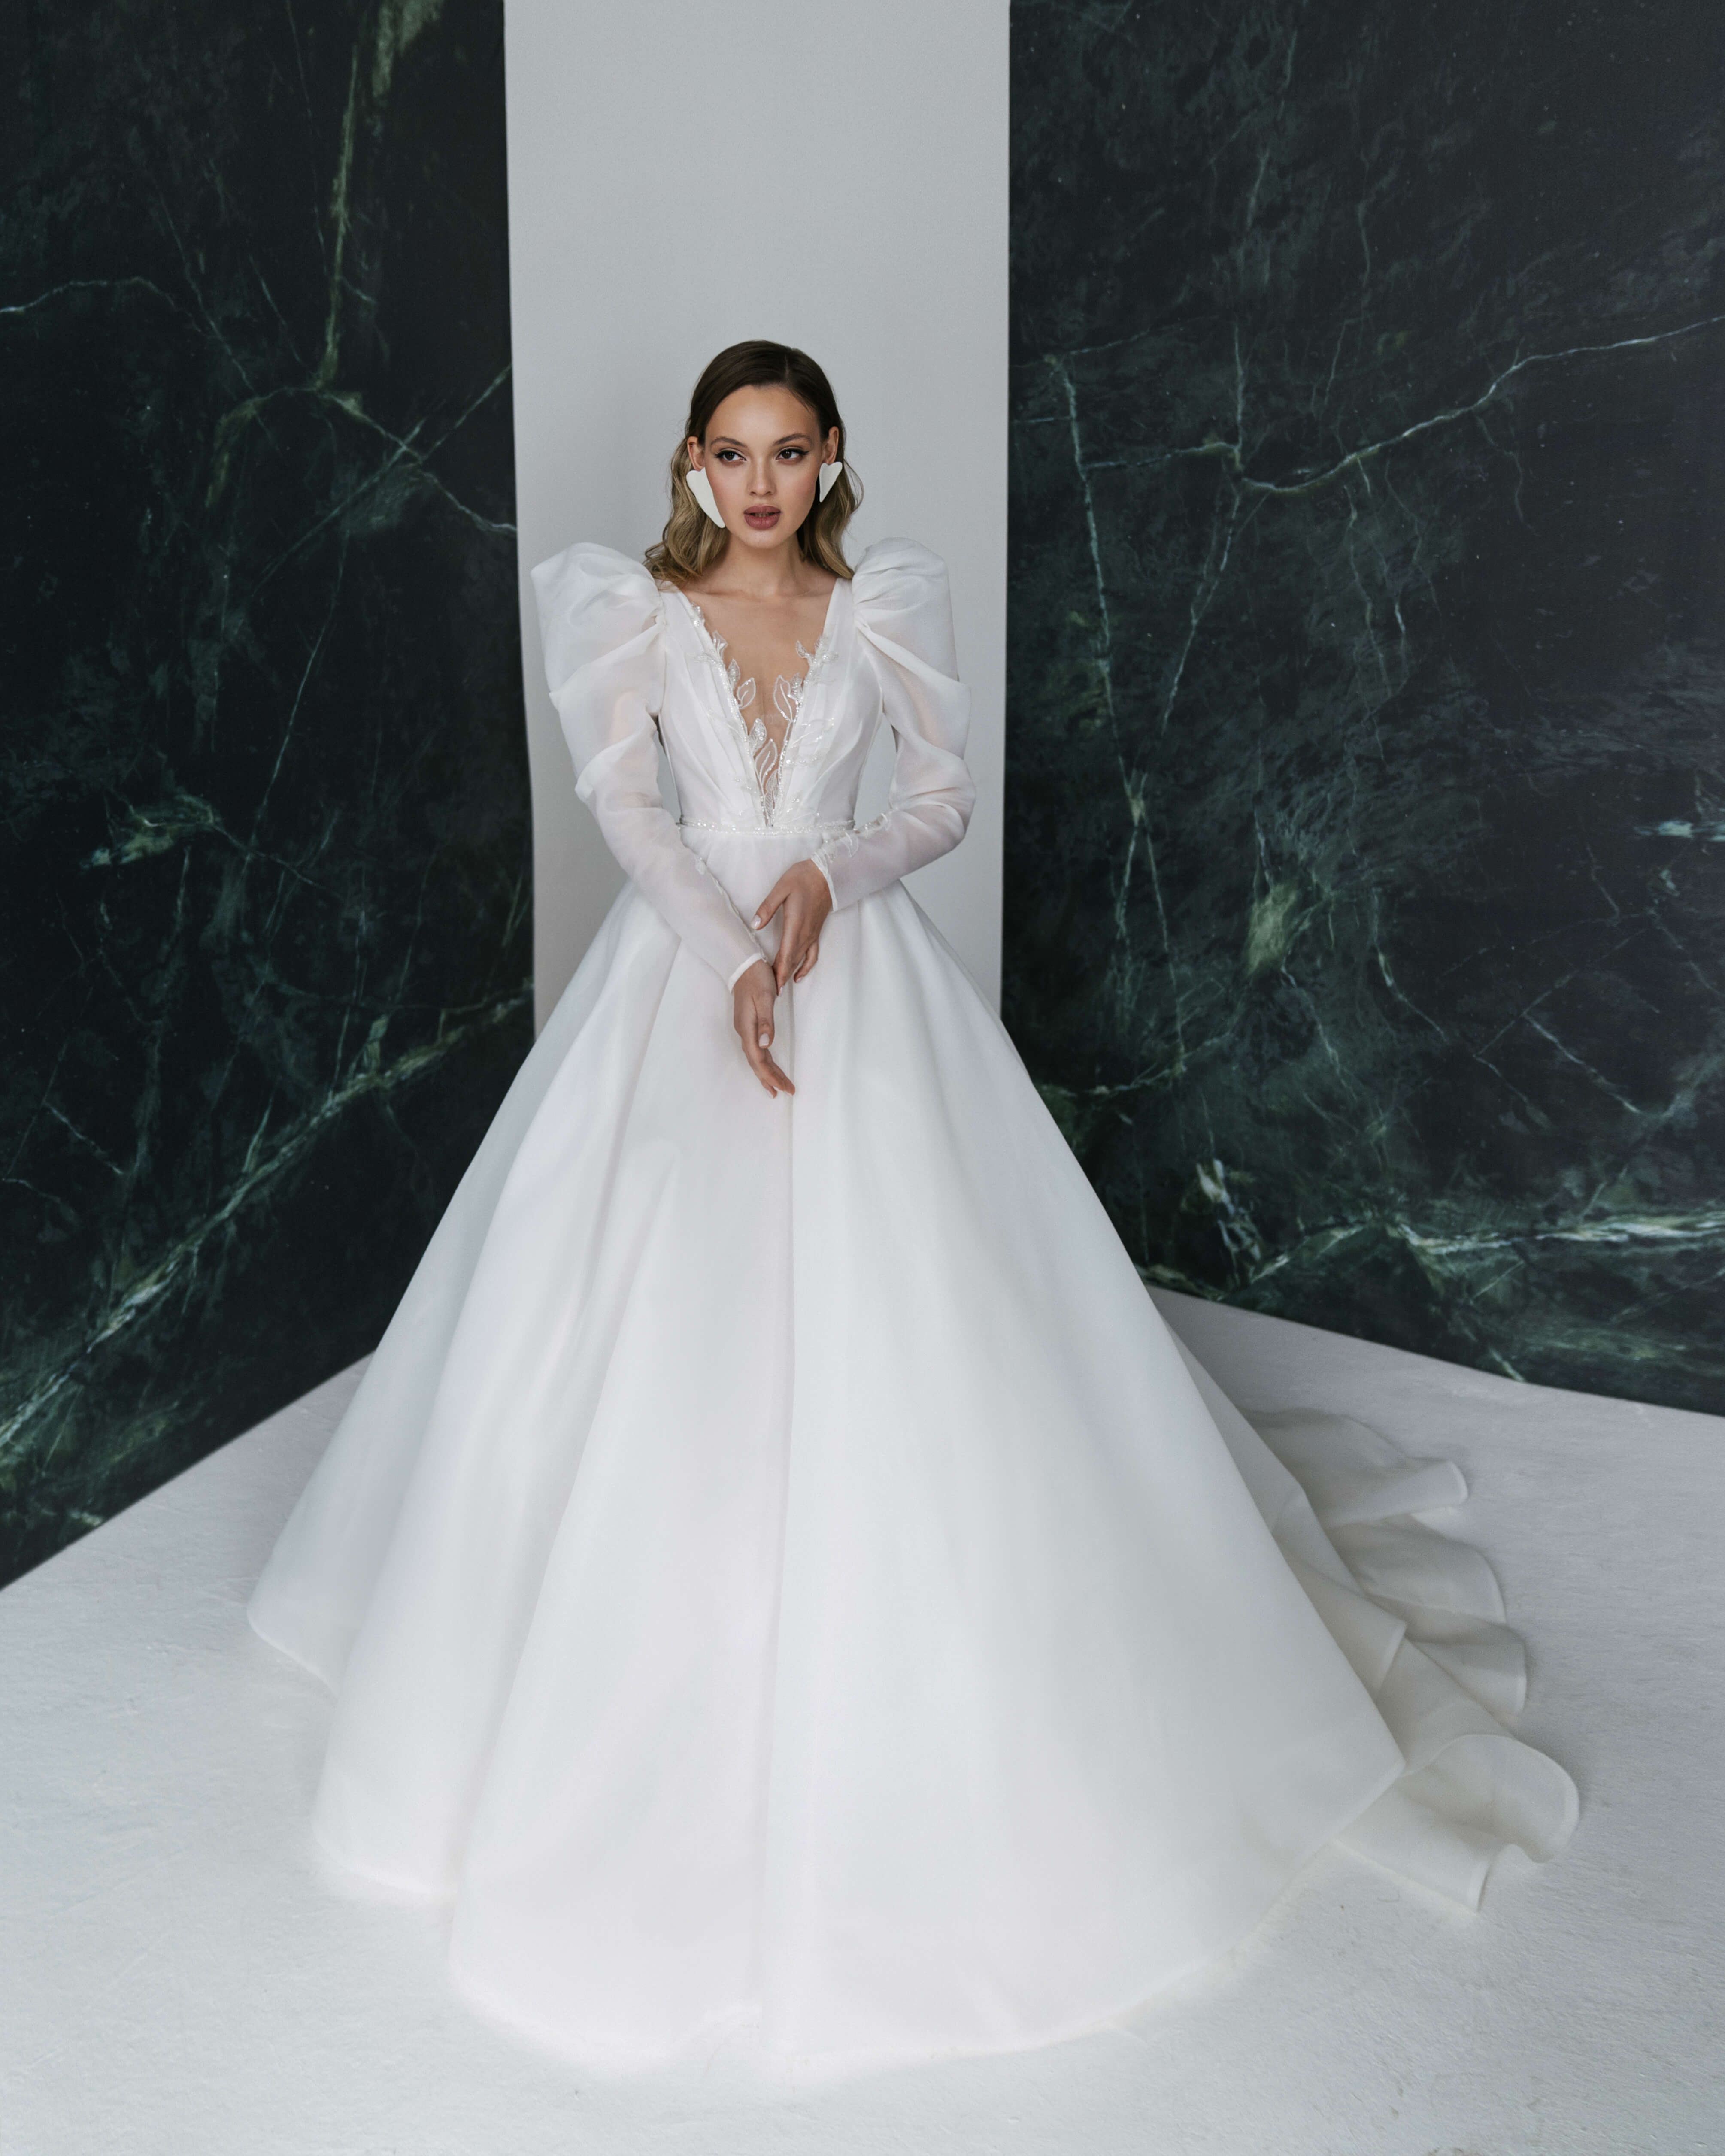 Купить свадебное платье «Слава» Рара Авис из коллекции Гелекси 2022 года в салоне «Мэри Трюфель»